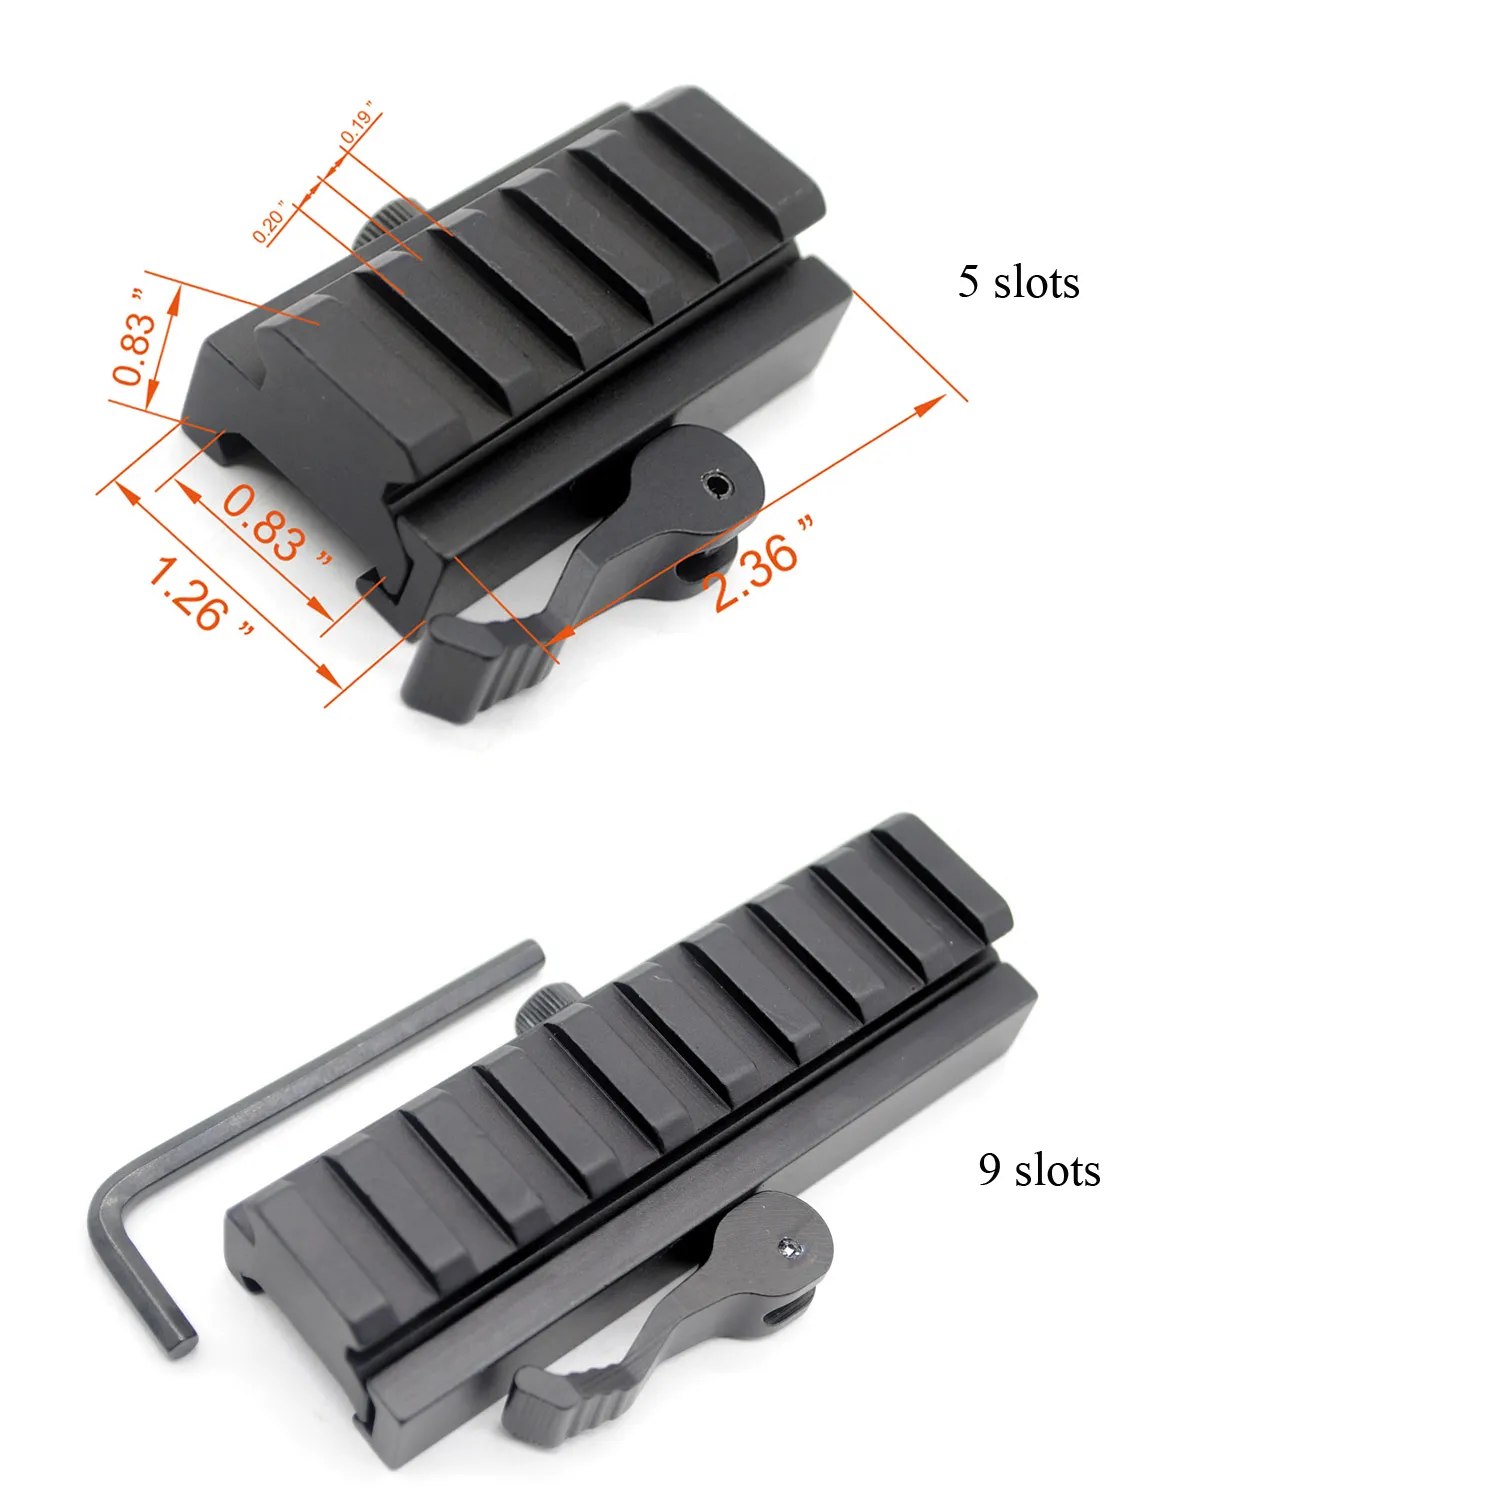 20 mm Picatinny/Weaver Rail Baese 5 / 9 슬롯 QD 퀵 릴리스 라이저 스코프 마운트 어댑터 무료 배송